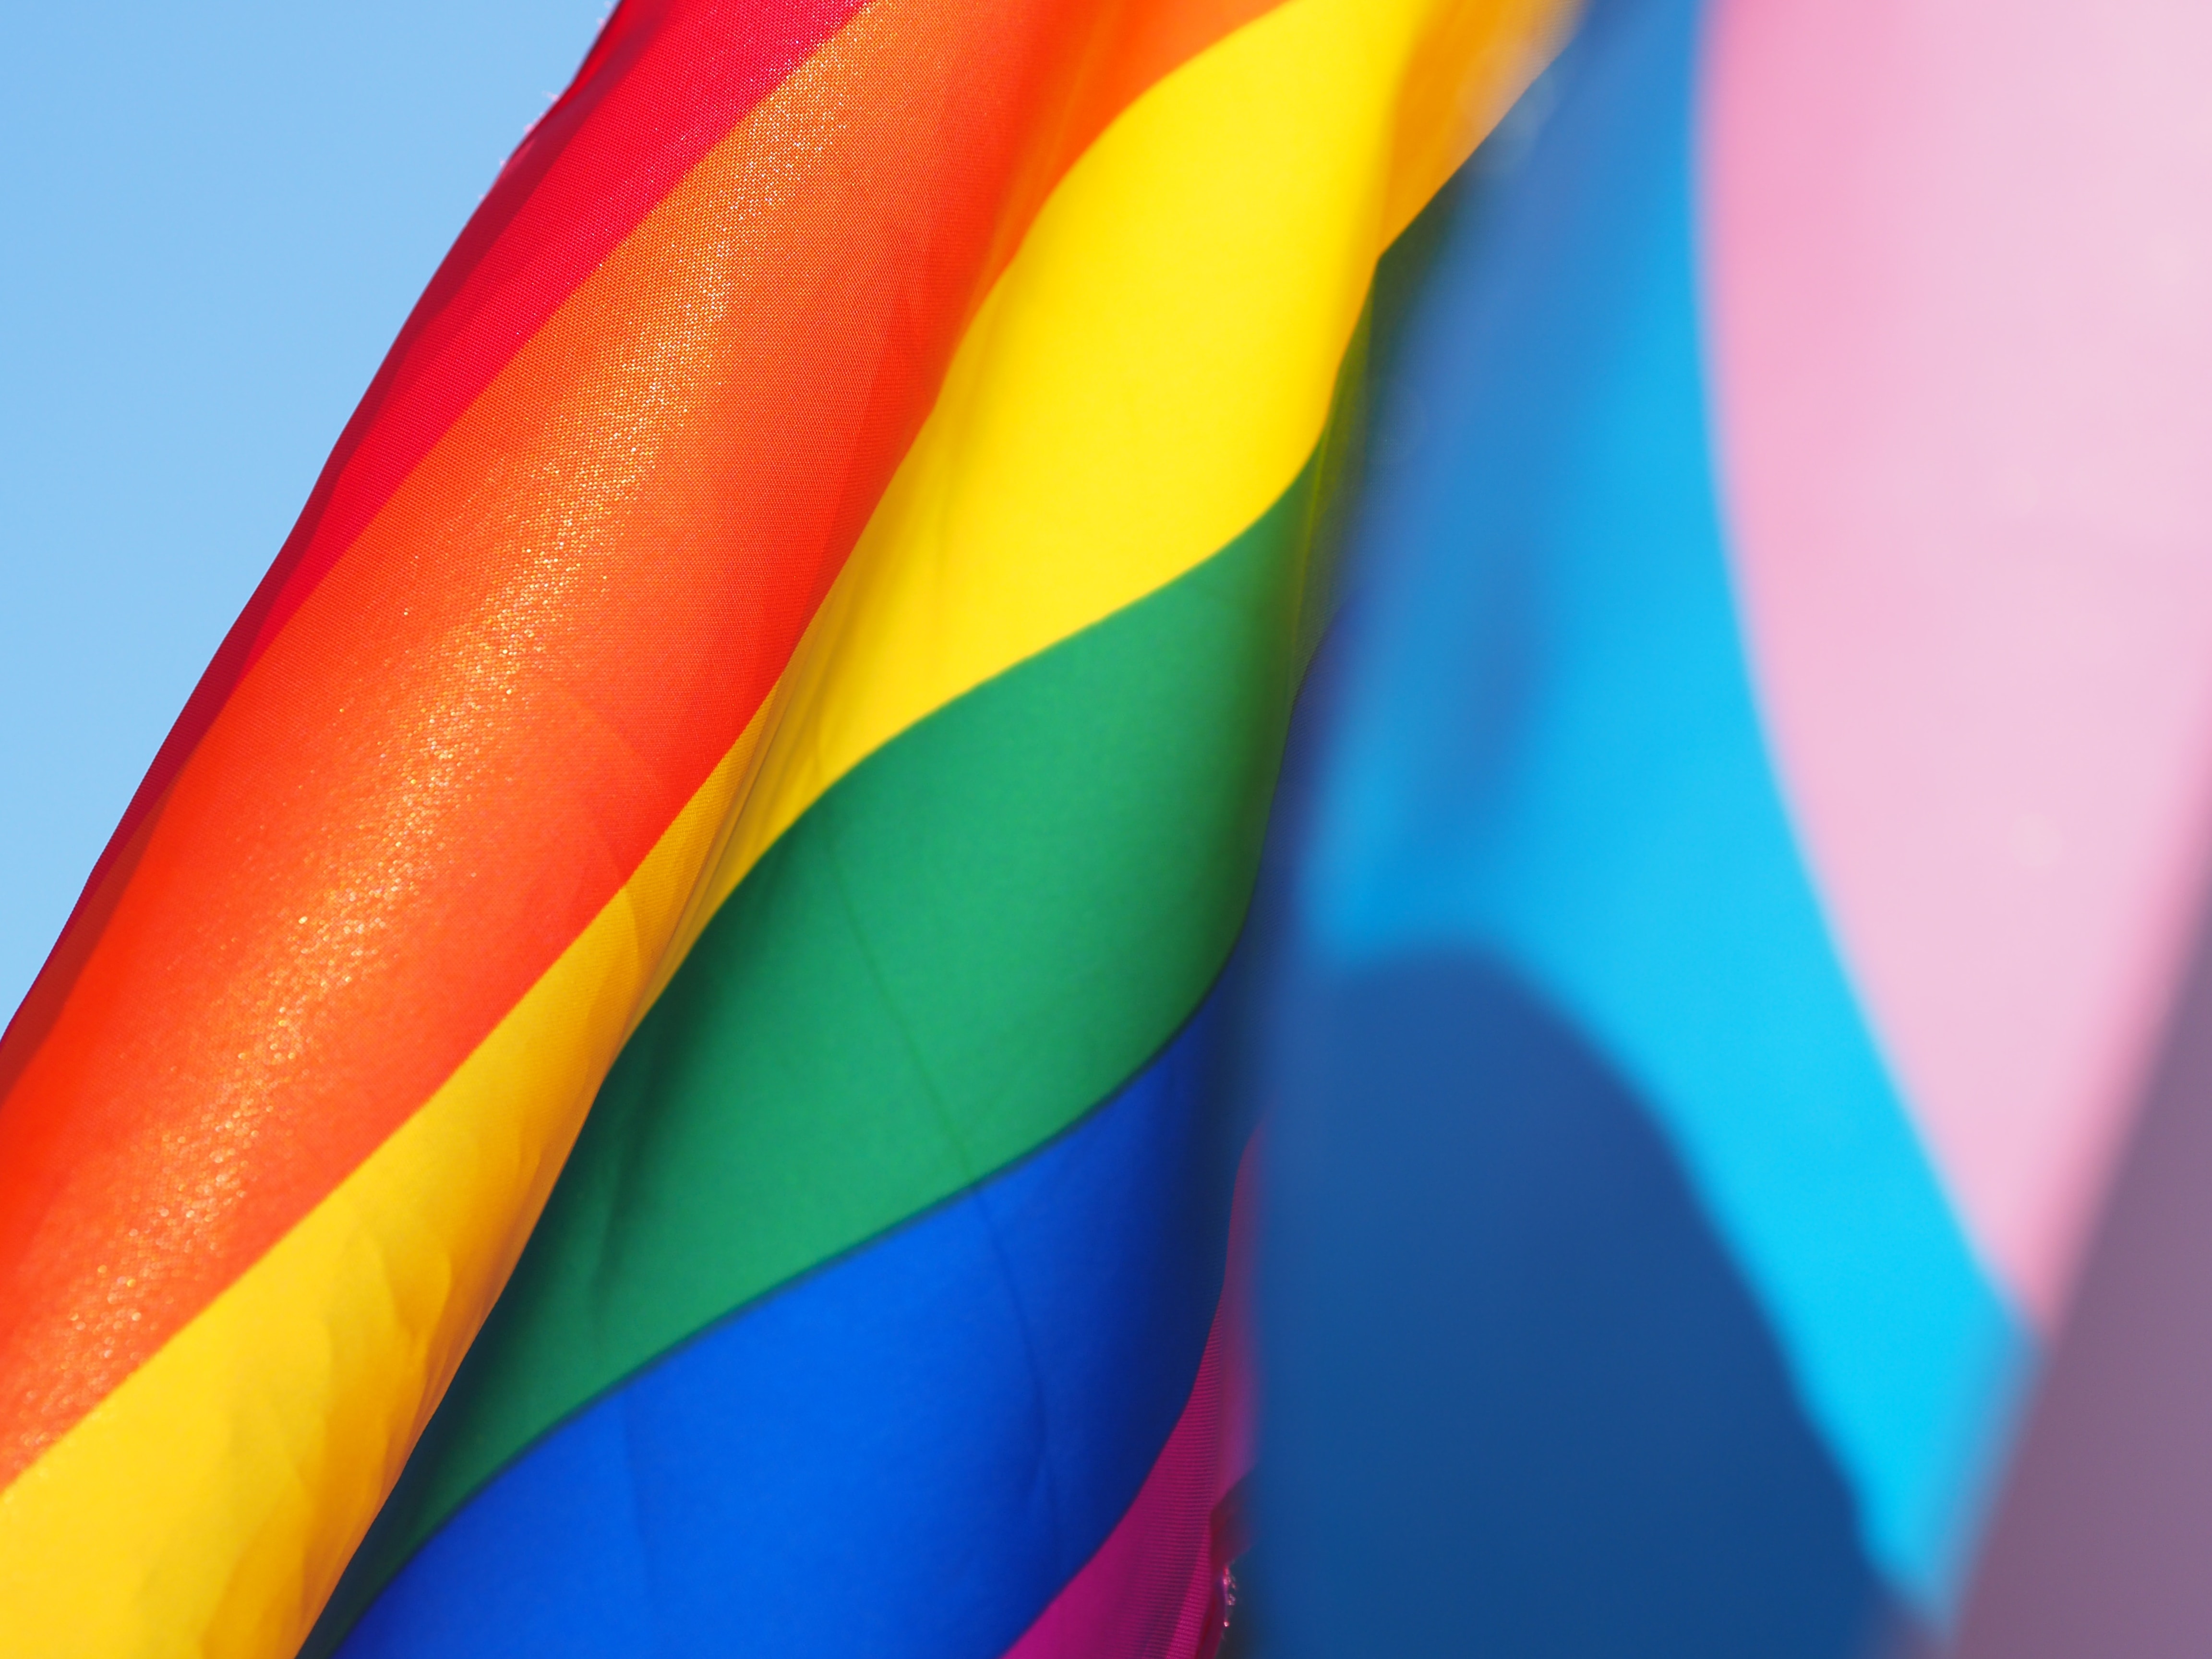 Νέο πλήγμα στα δικαιώματα των ΛΟΑΤΚΙ+ στις ΗΠΑ: Το Ανώτατο Δικαστήριο έκρινε υπέρ σχεδιάστριας που αρνήθηκε να εξυπηρετήσει ομόφυλο ζευγάρι